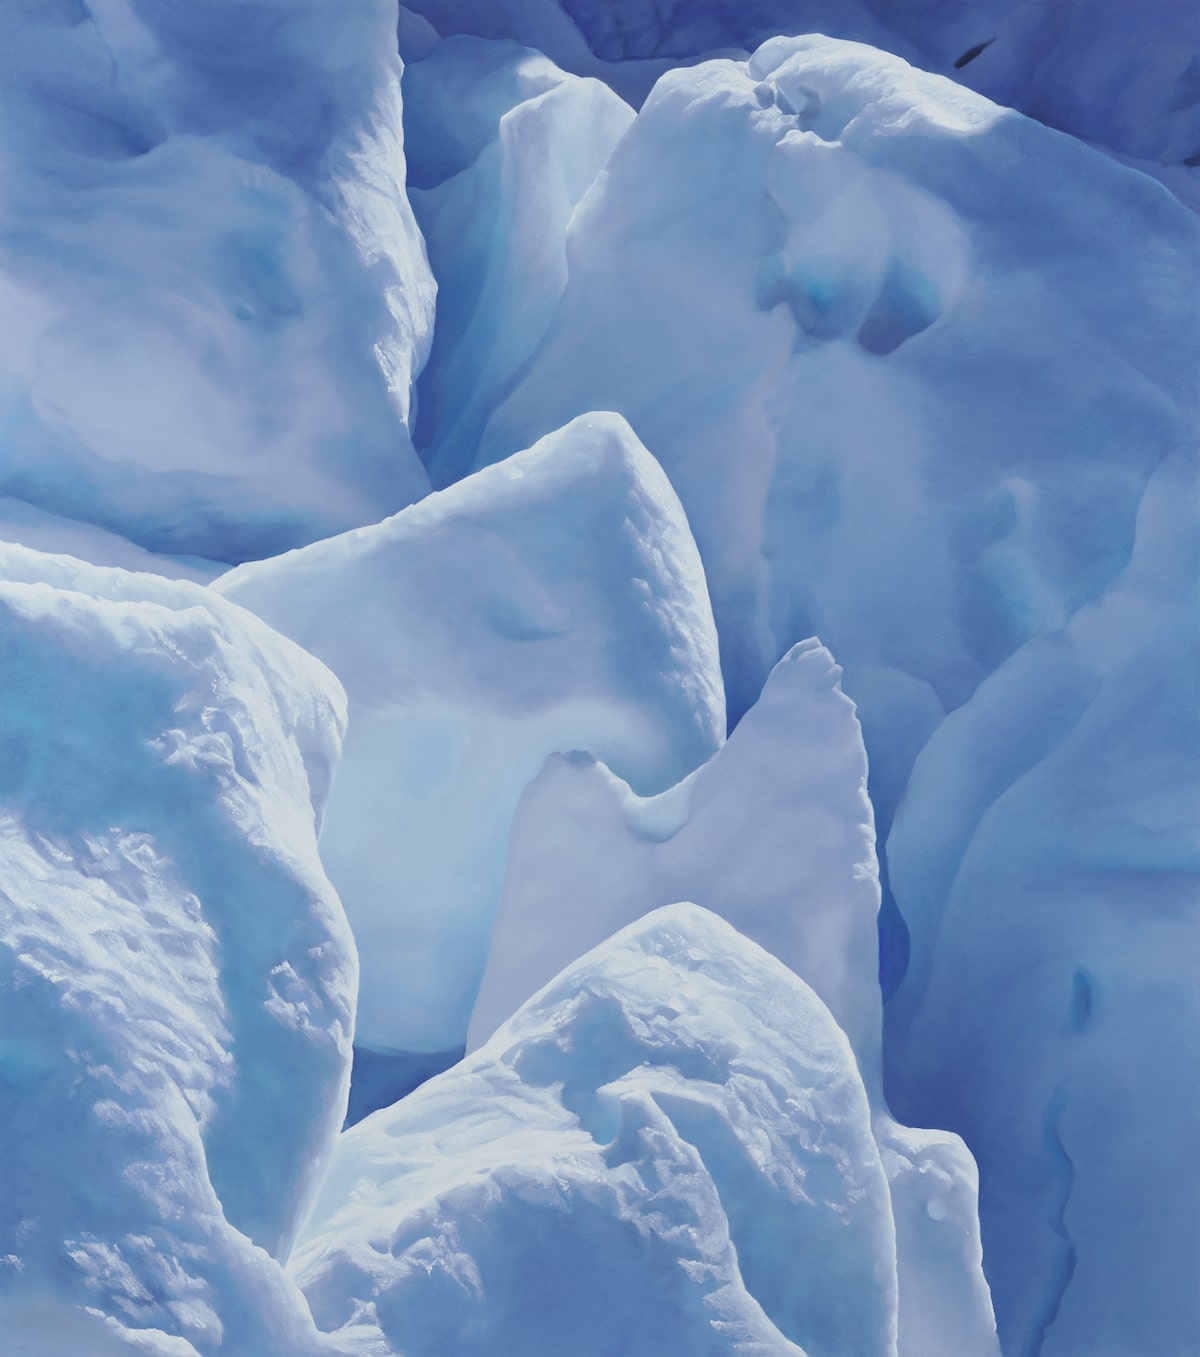 dibujo del glaciar Perito Moreno por Zaria Forman